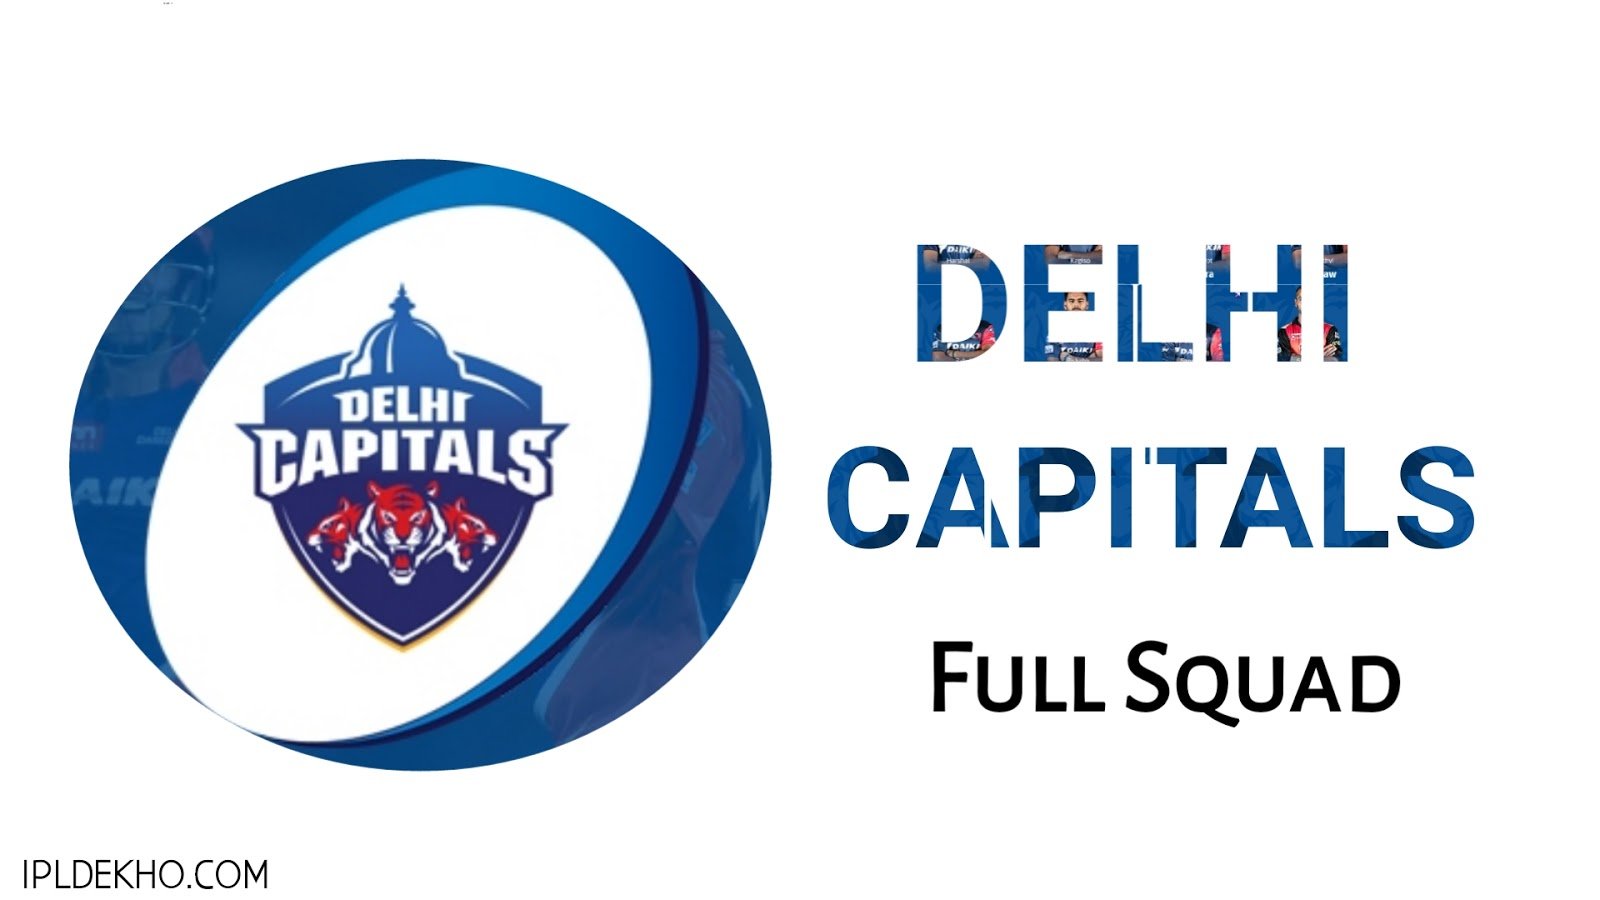 Indian premier league 2019 Full Squad Of Delhi Capitals